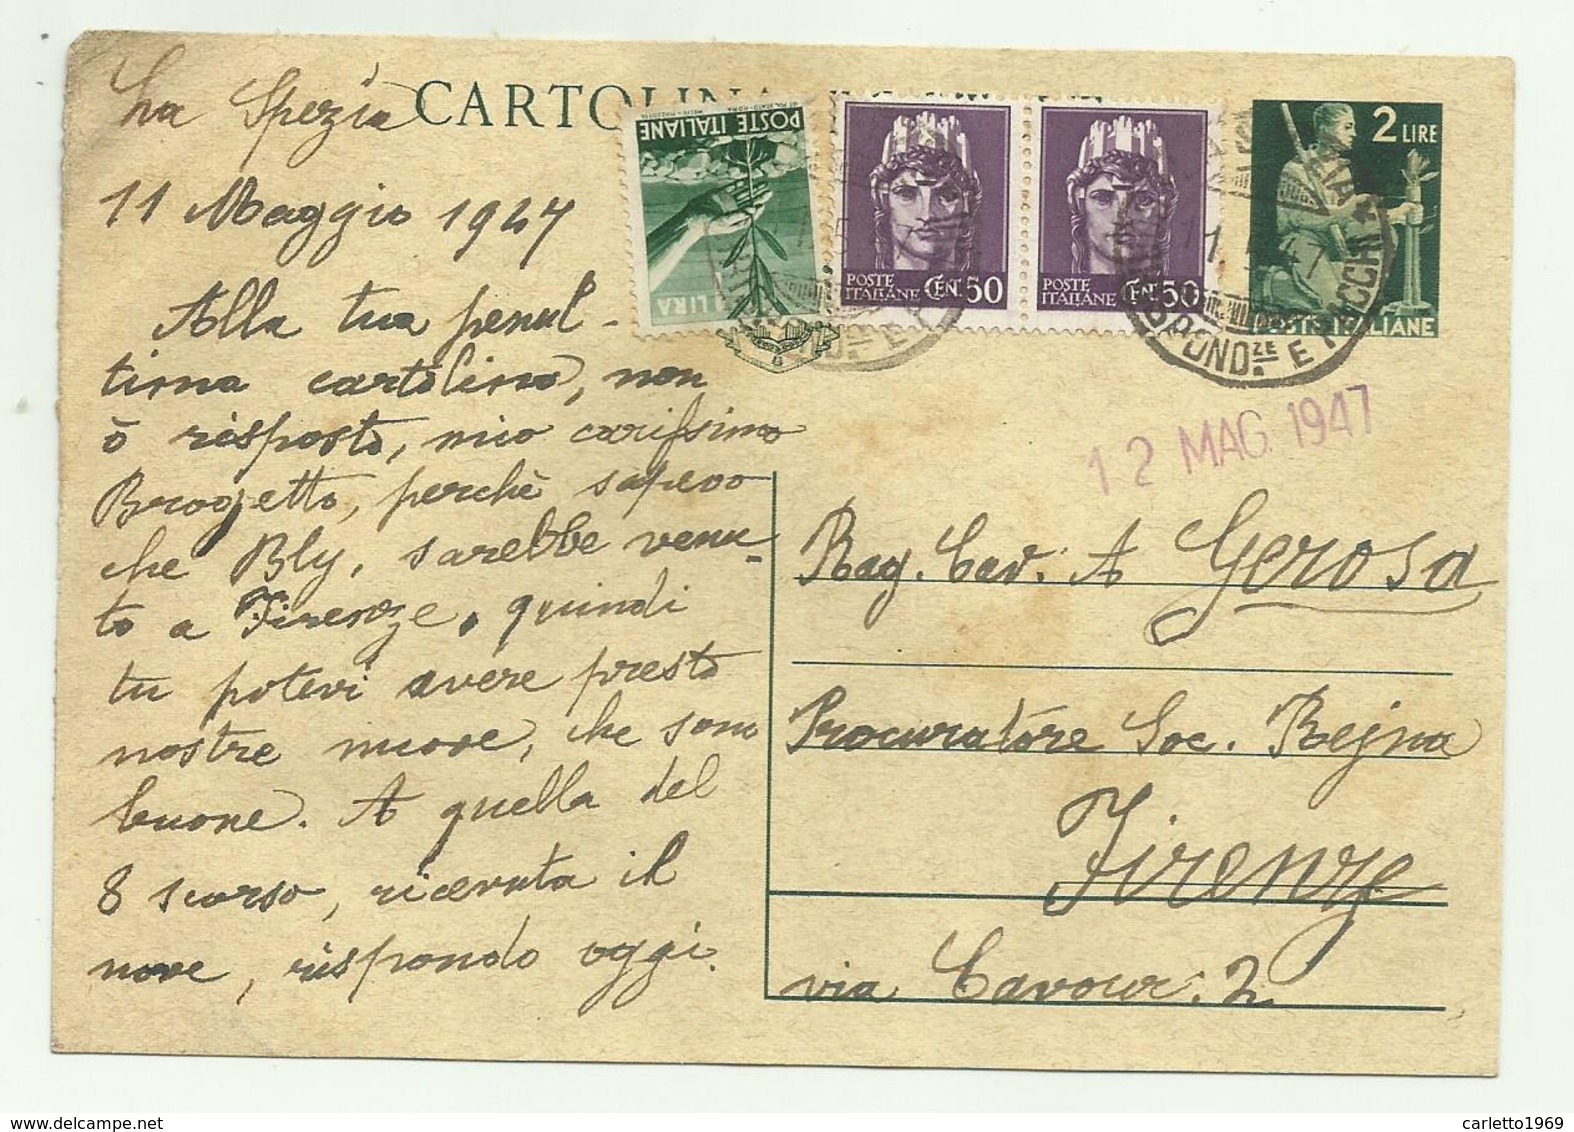 CARTOLINA POSTALE LIRE 2  CON AGGIUNTA DI 1 LIRA E 2 DA CENT. 50 - 1947  FG - Storia Postale